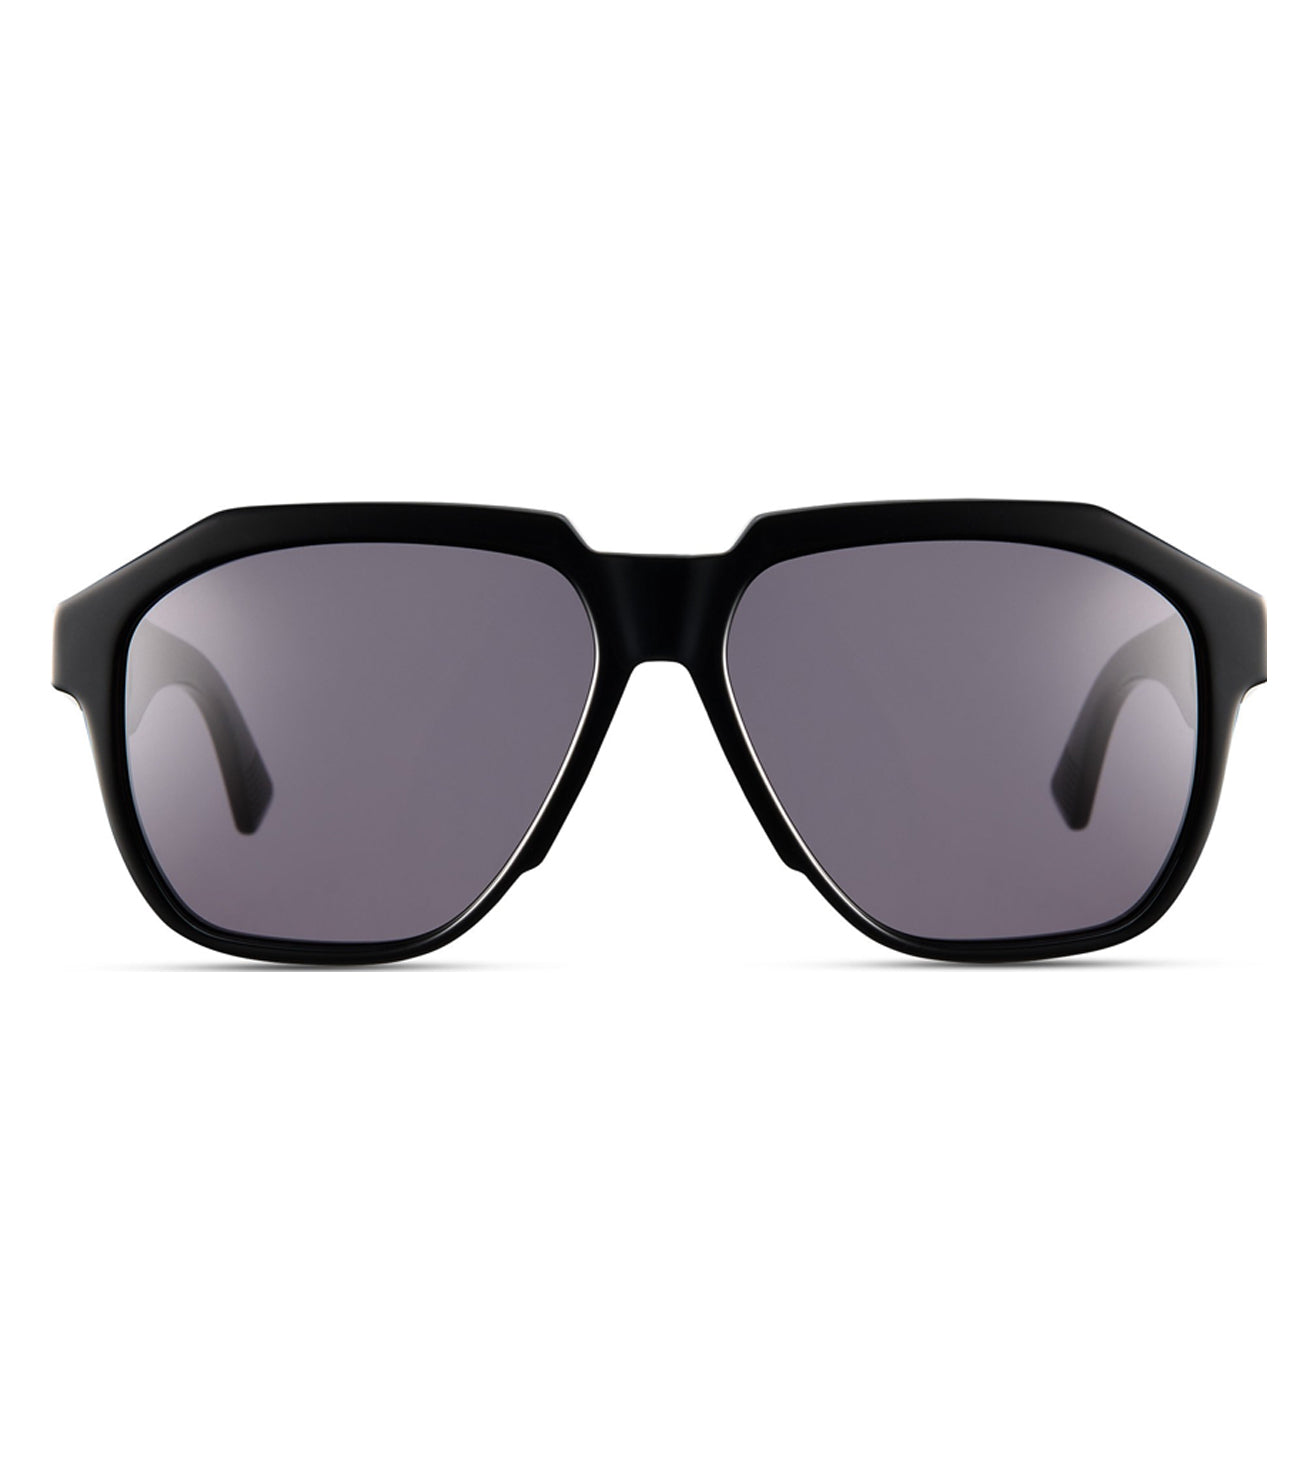 Bottega Veneta Men's Grey Aviator Sunglasses